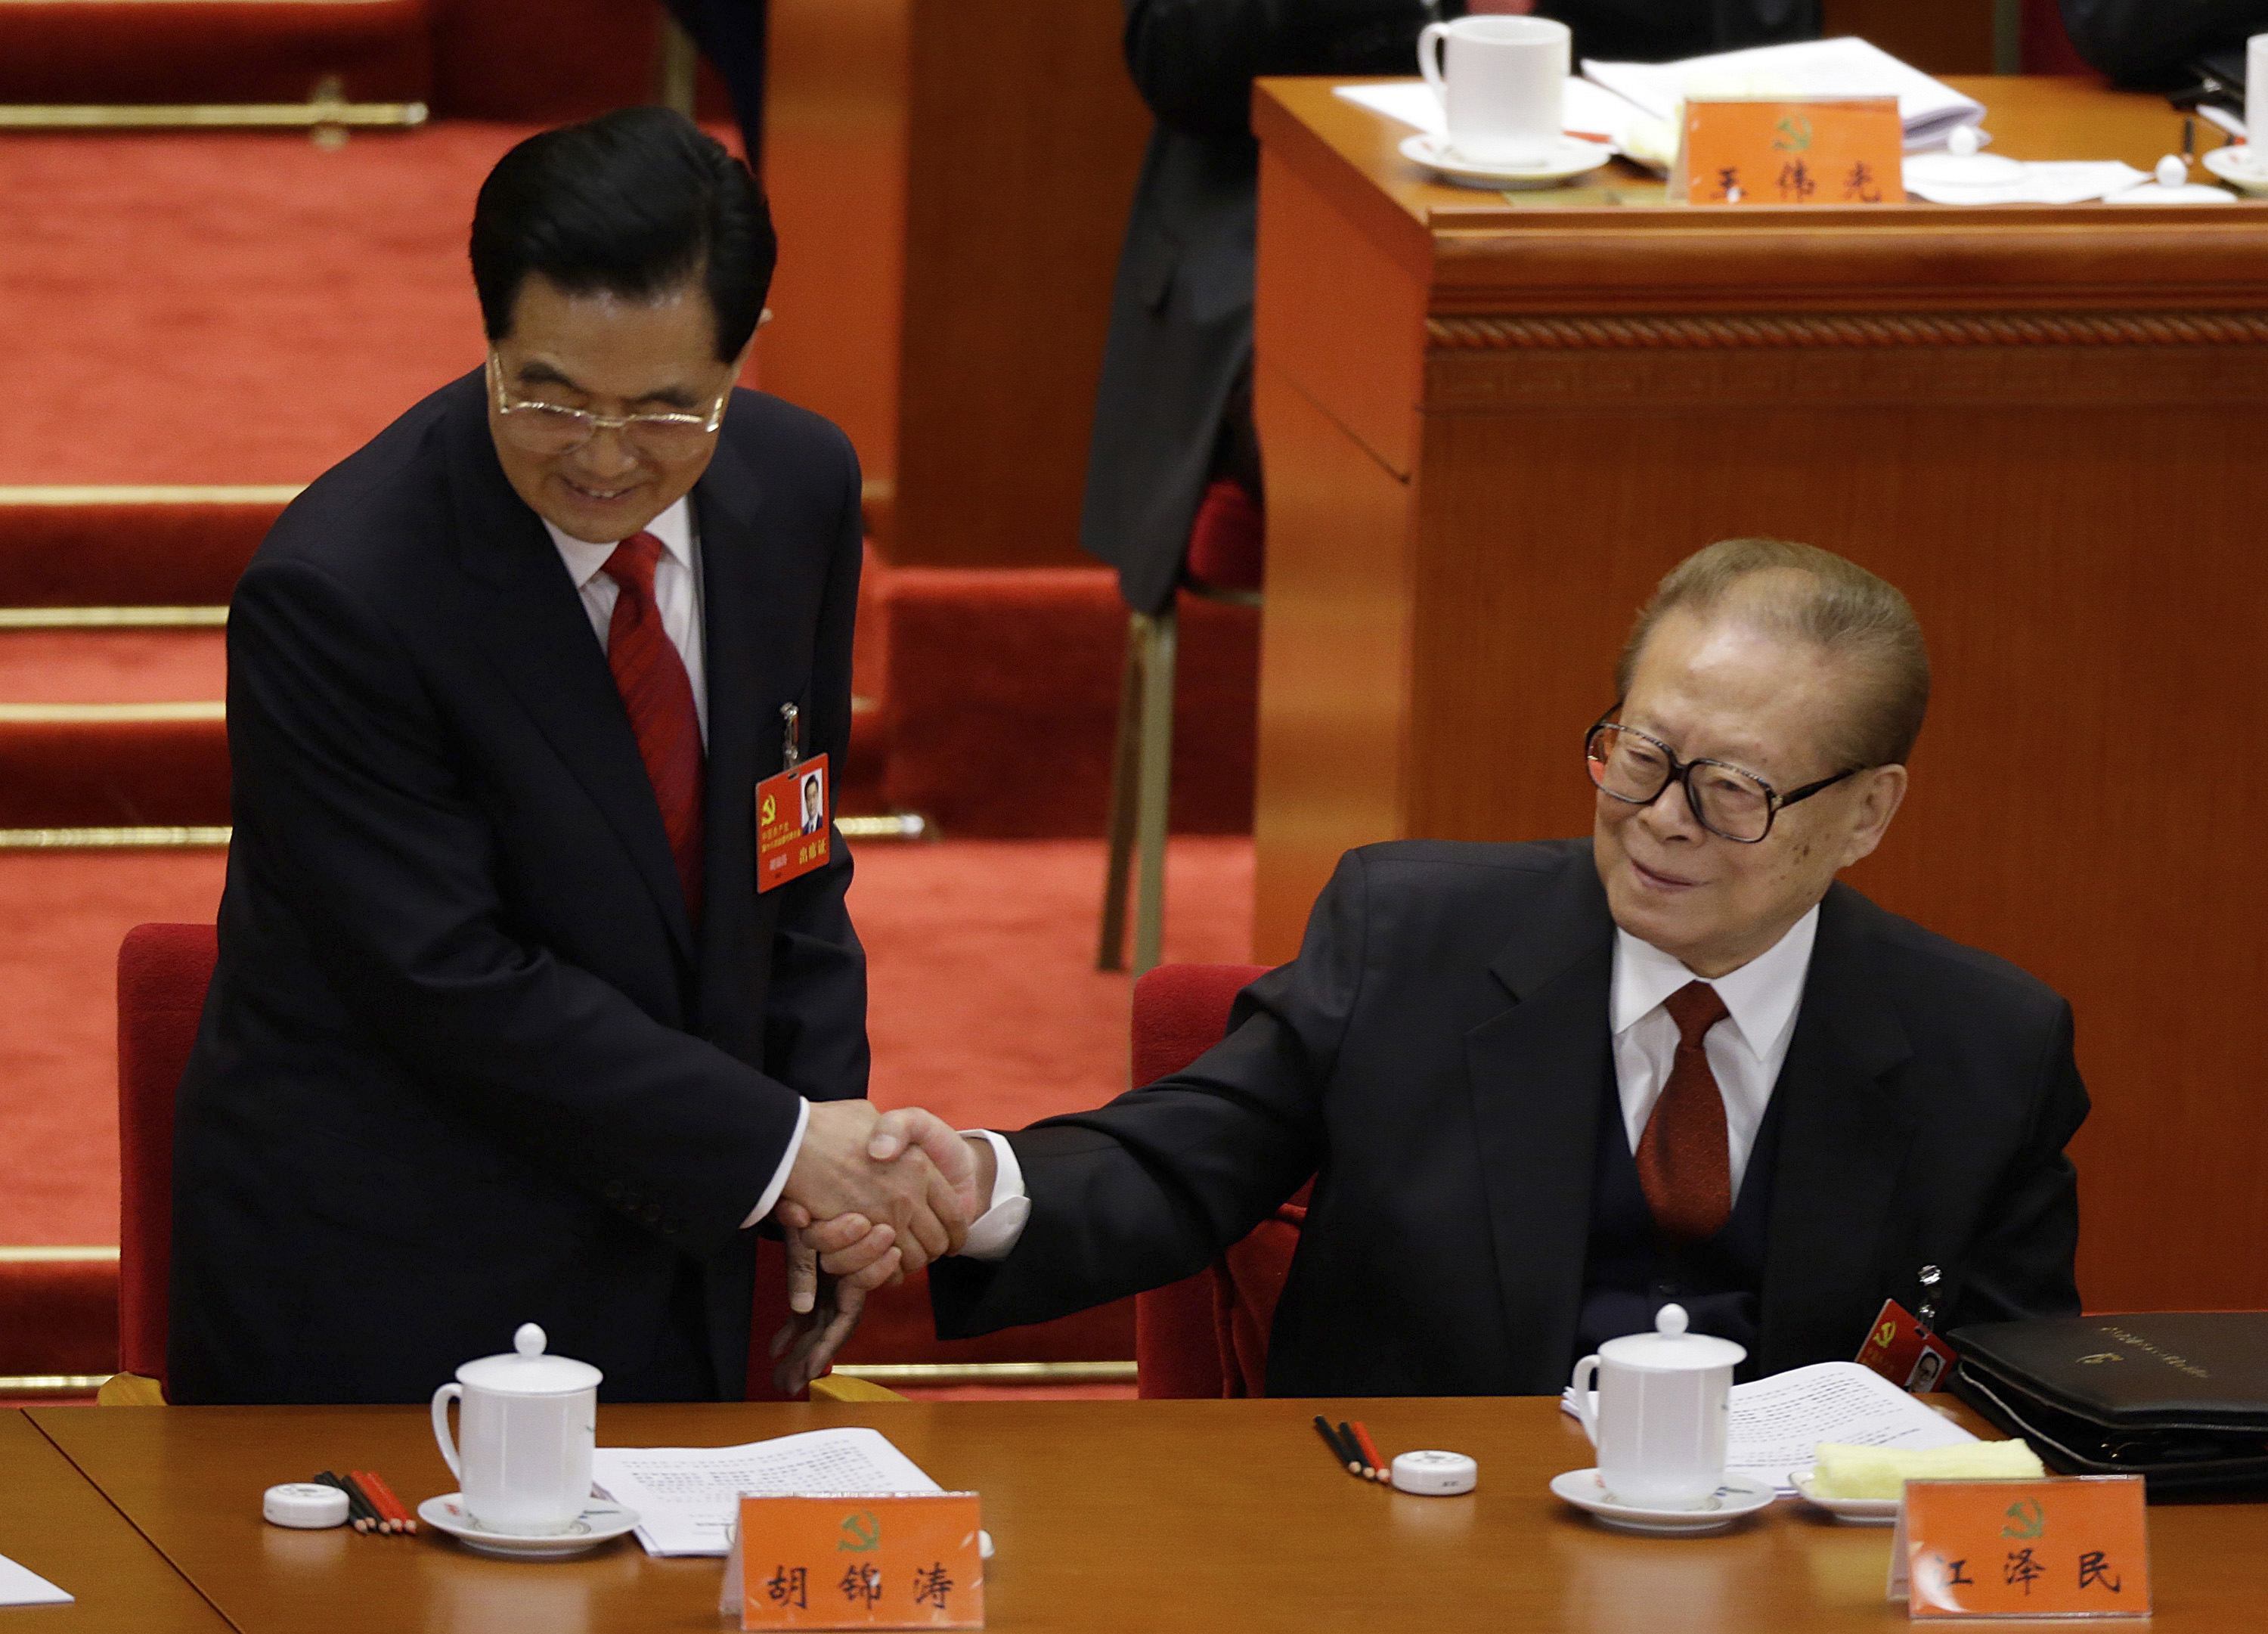 Ιστορική διαδοχή στην Κίνα: ο Σι Τζιν Πινγκ νέος πρόεδρος του ΚΚΚ